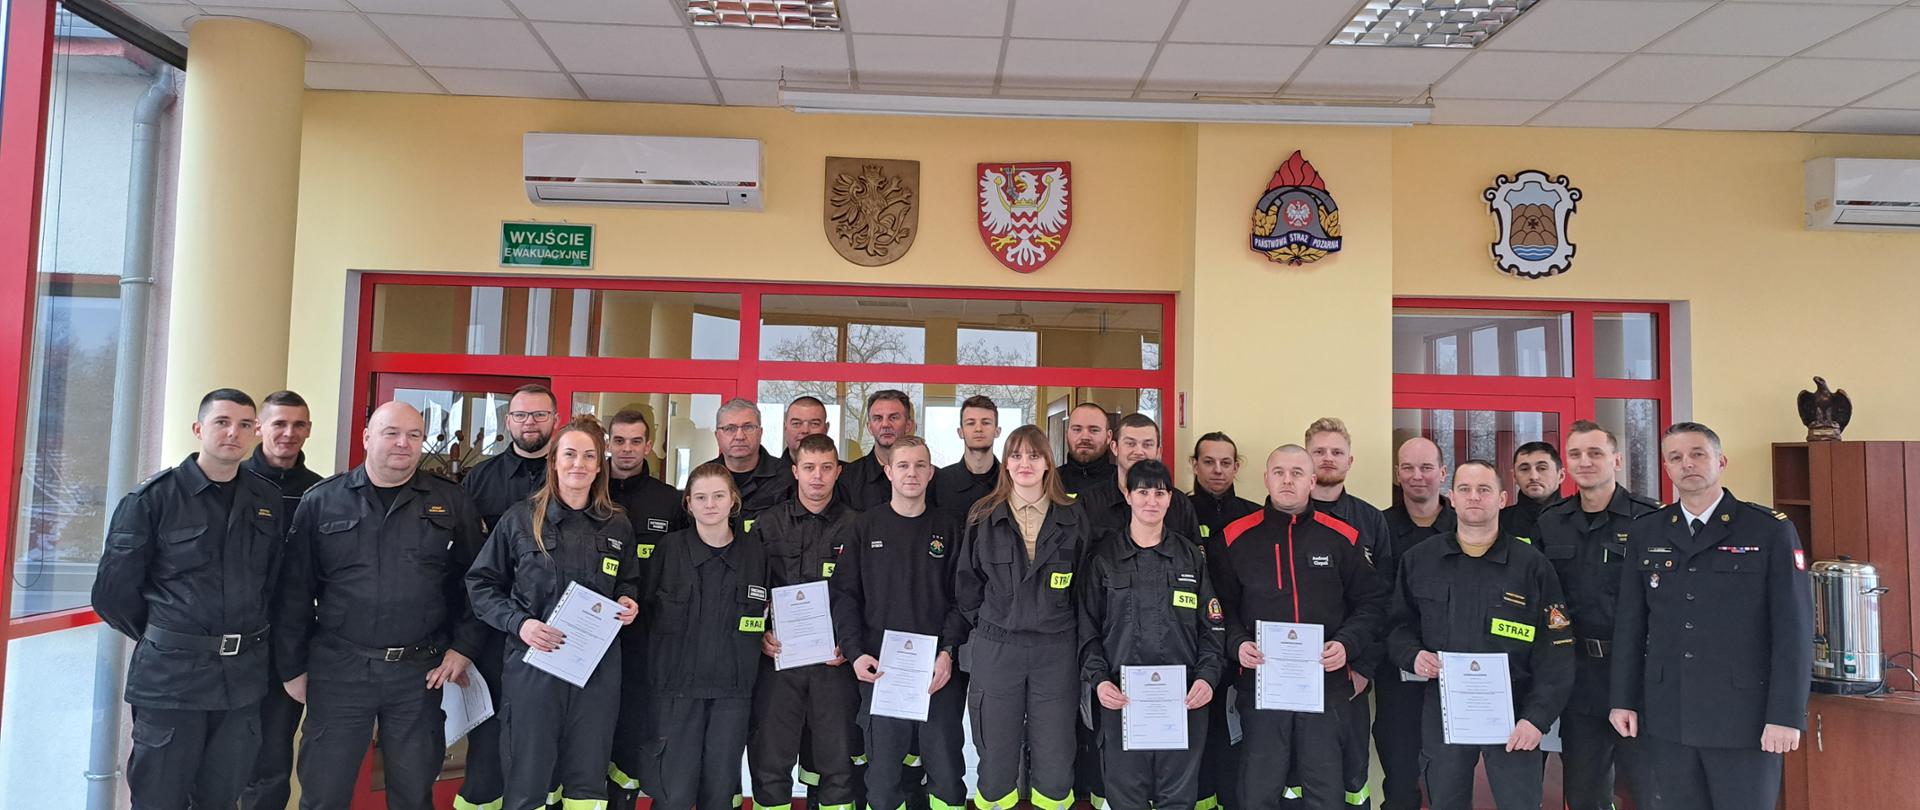 Na zdjęciu znajdują się uczestnicy szkolenia dla kierujących działaniem ratowniczym dla strażaka ratownika OSP, zdjęcie wykonano w Sali sztabowej KP PSP w Chełmnie podczas wspólnego zdjęcia po zakończonym egzaminie. 